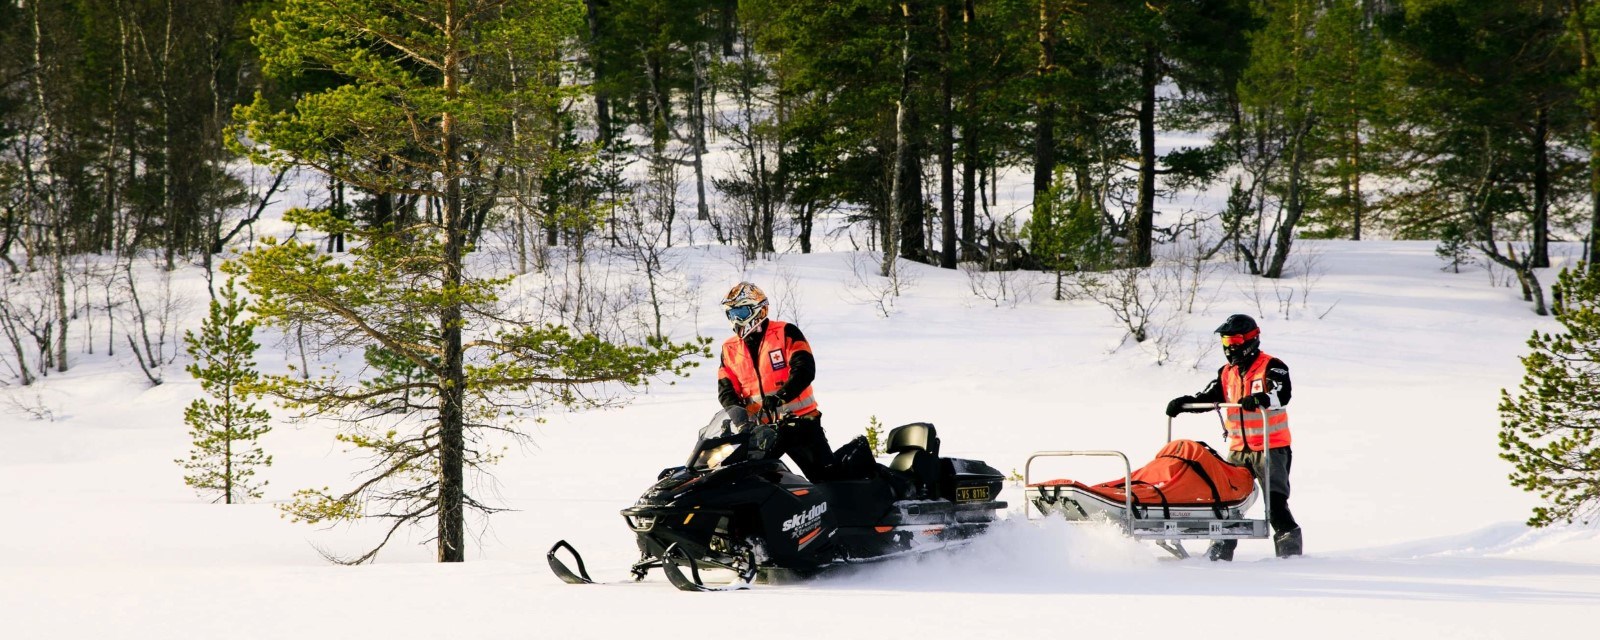 To menn kjører snøskuter i snø. Har hjelpekorpsuniformer.